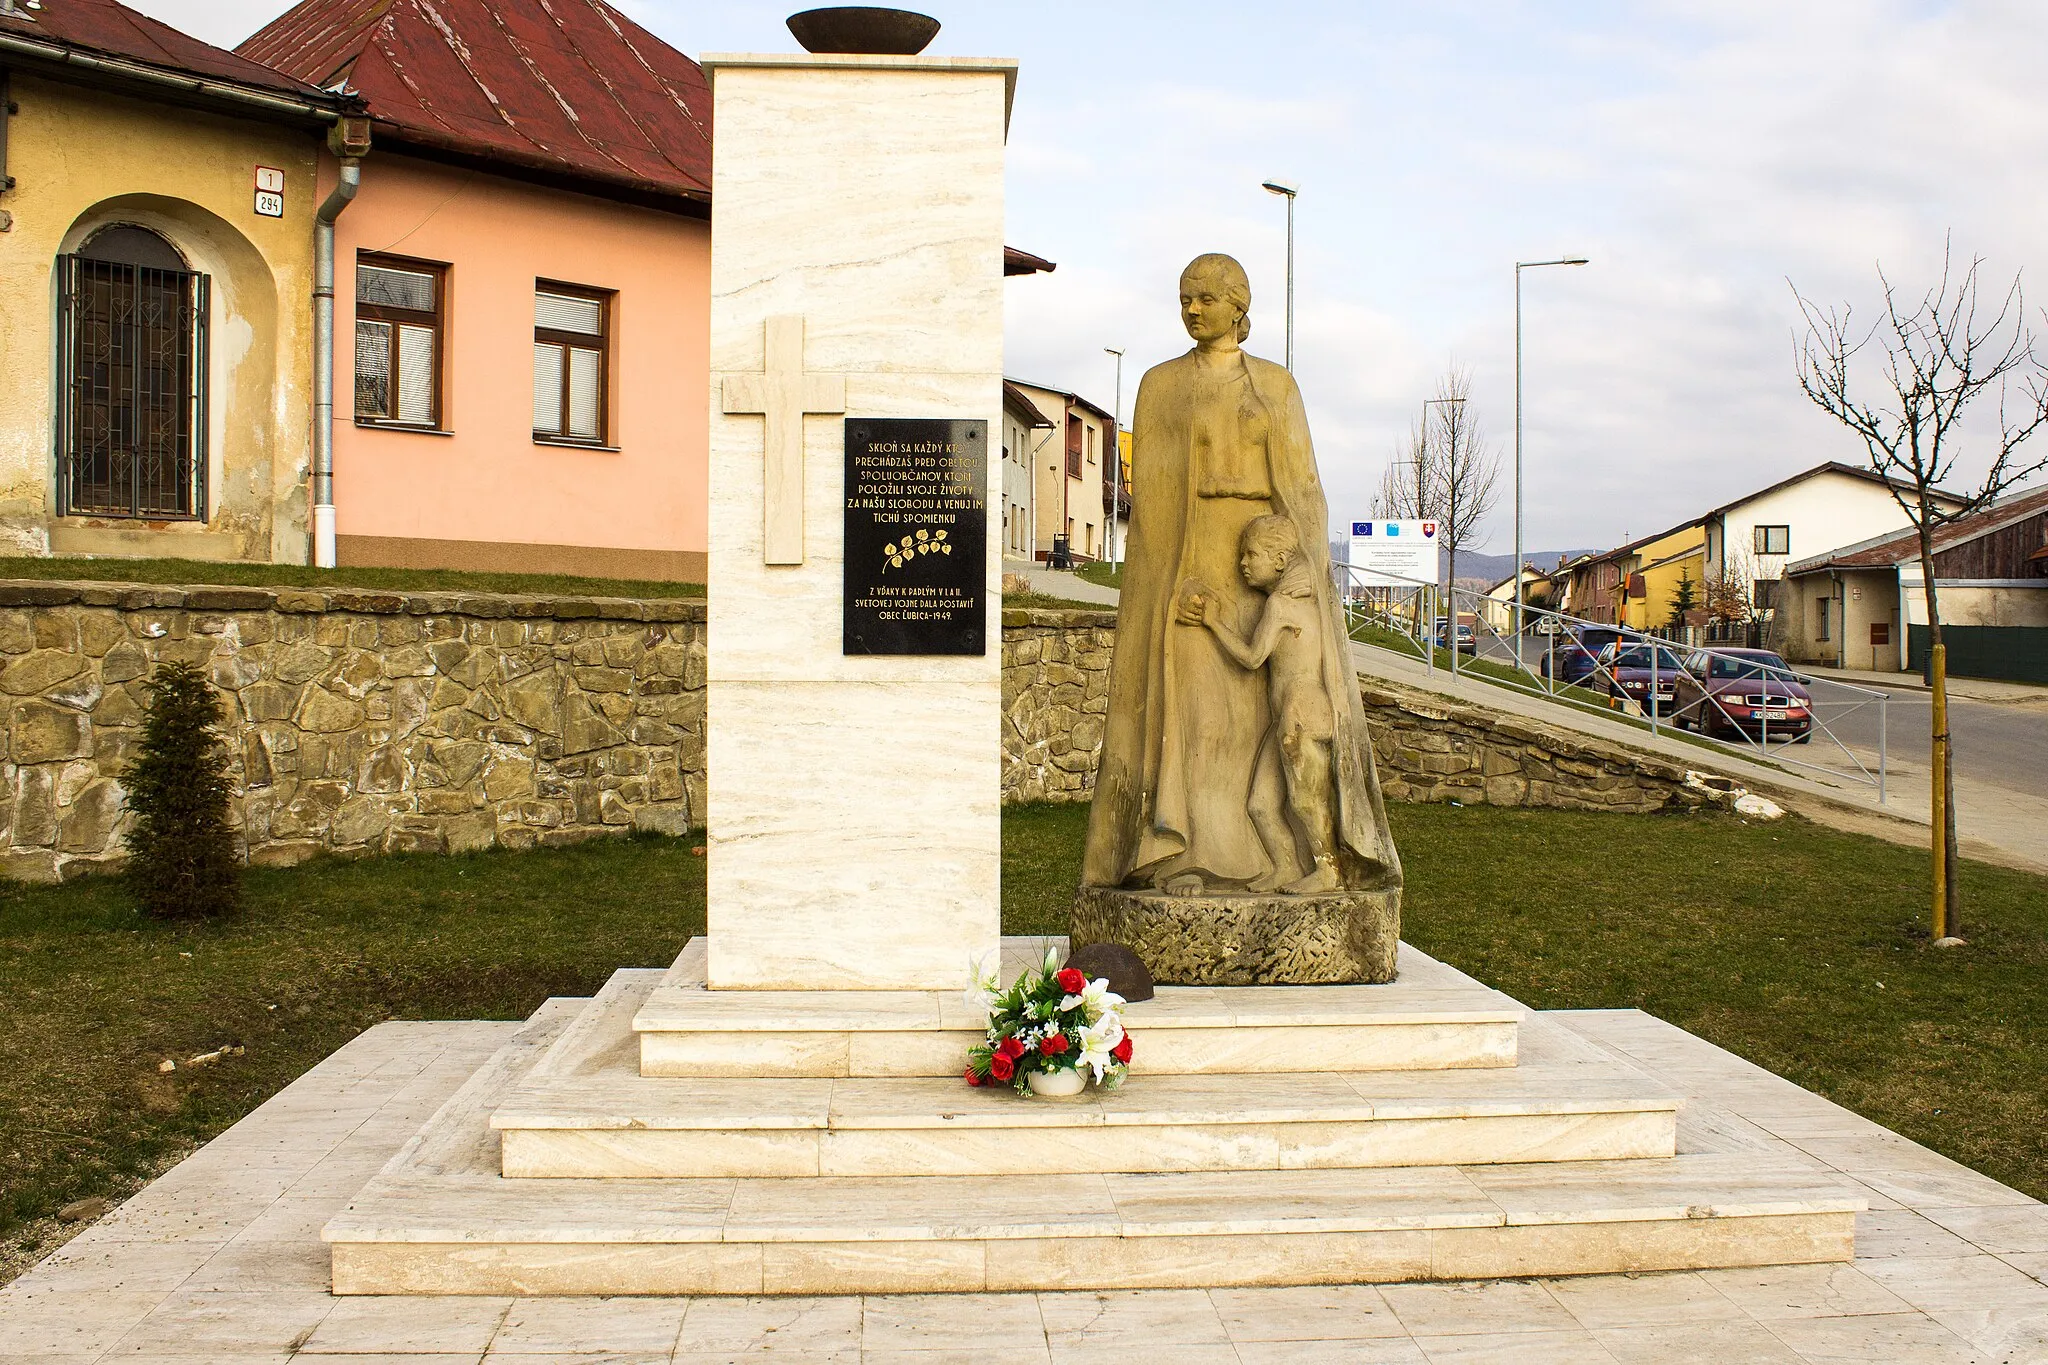 Obrázok Východné Slovensko